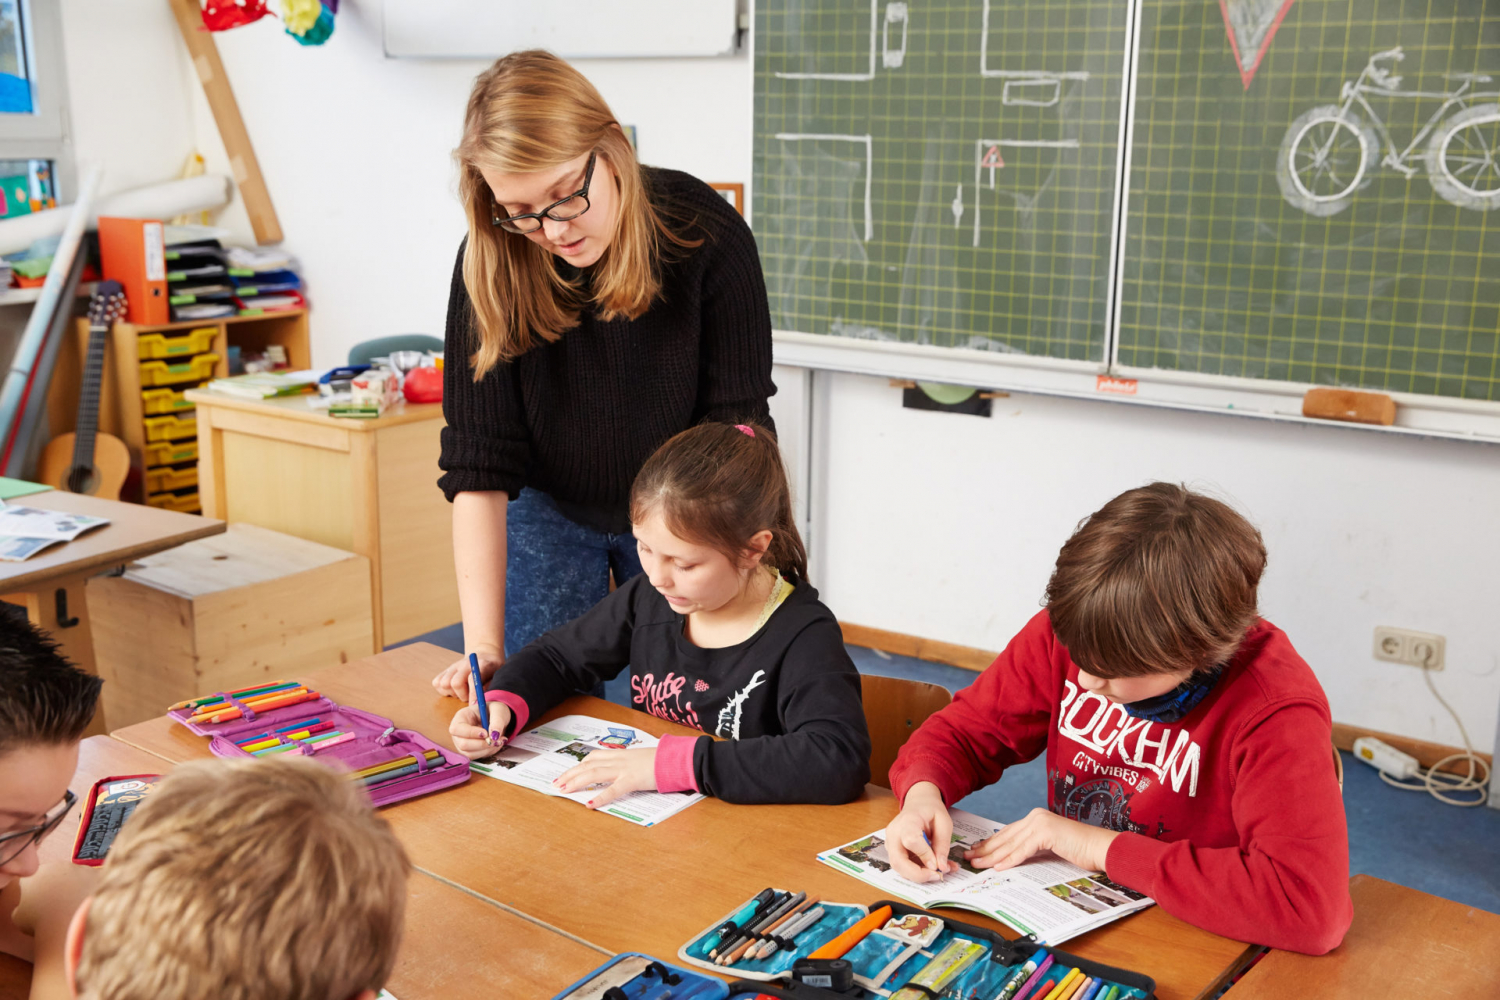 Hệ thống trường học ở Đức - Giáo dục tiểu học là giai đoạn duy nhất trong giáo dục Đức nơi tất cả học sinh học cùng loại trường